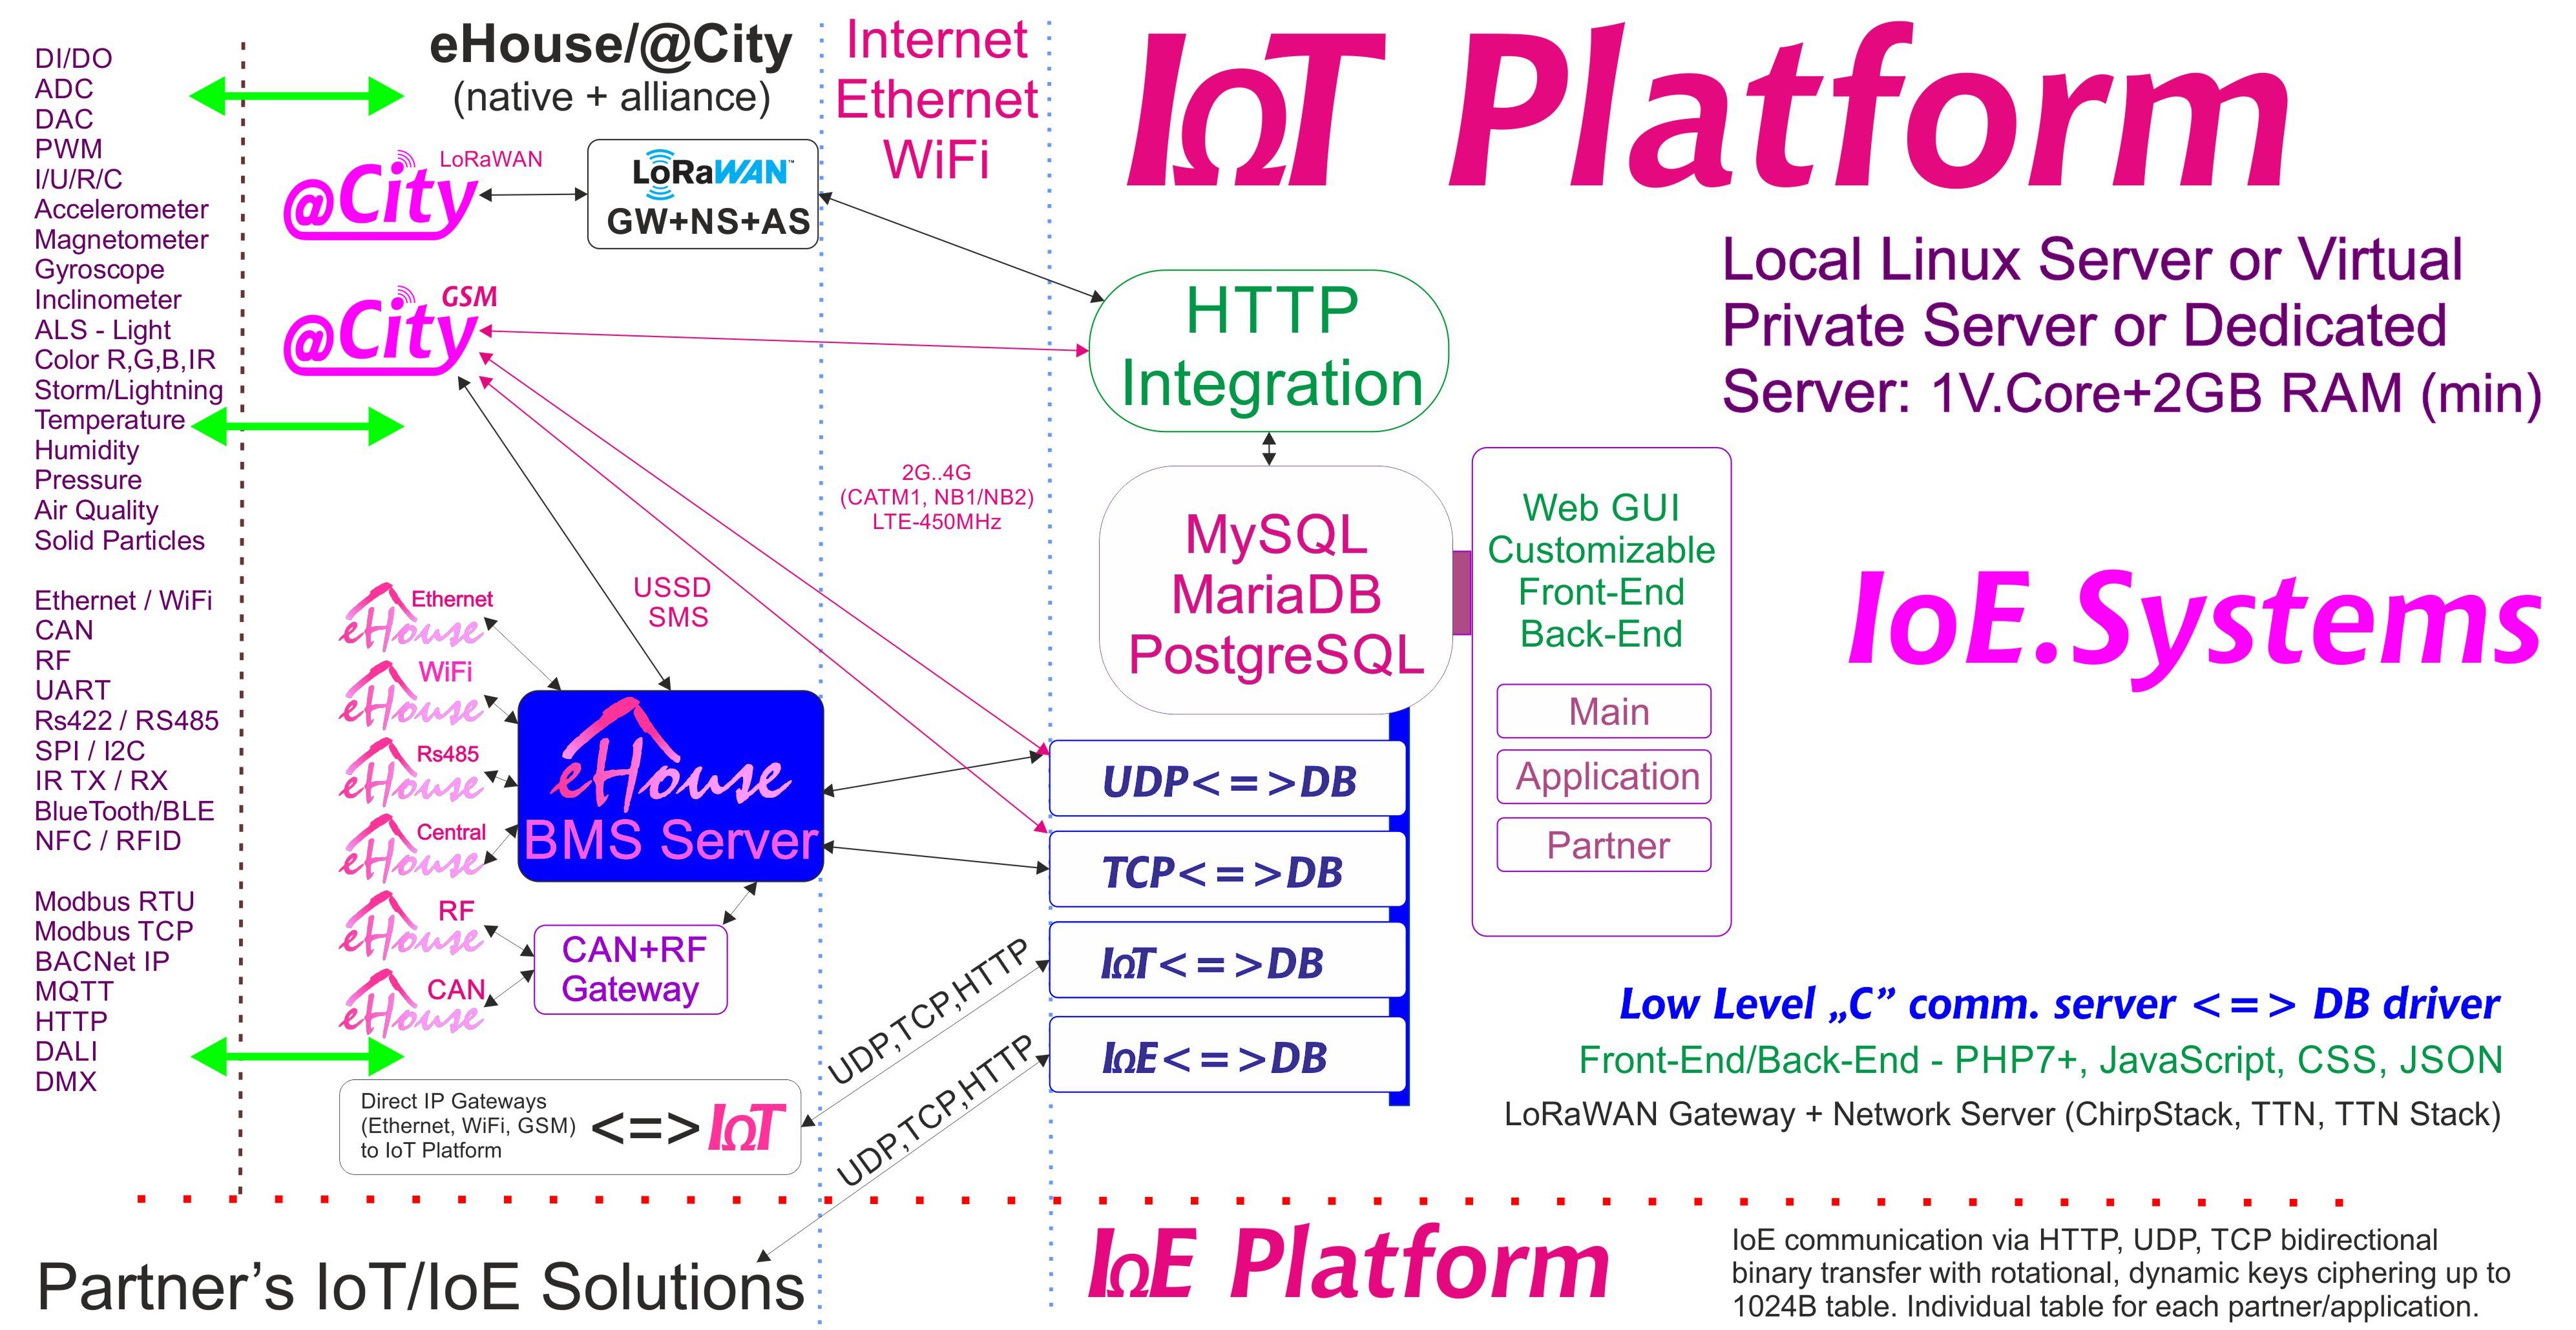 eHouse, eCity Server Software BAS, BMS, IoE, sistemas e plataforma de IoT